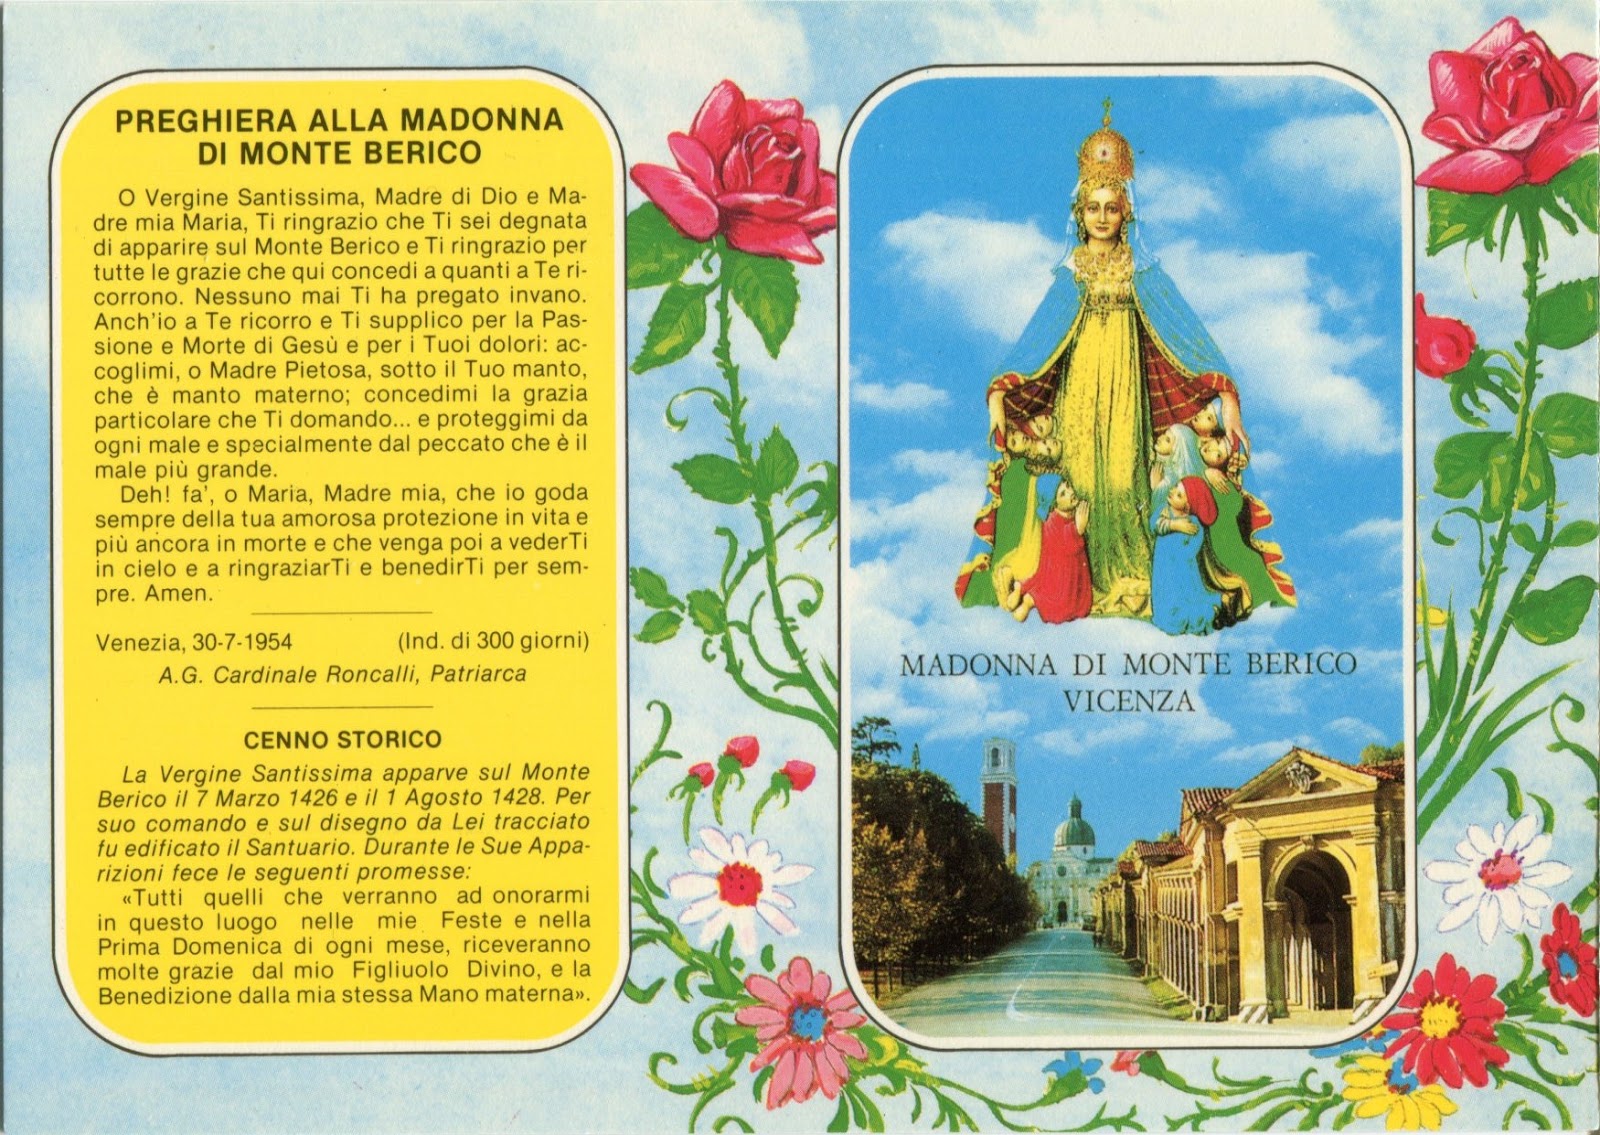 Affidamentoalla Madonna Di Monte Berico Vicenza Non C E Rosa Senza Spine By Giuma